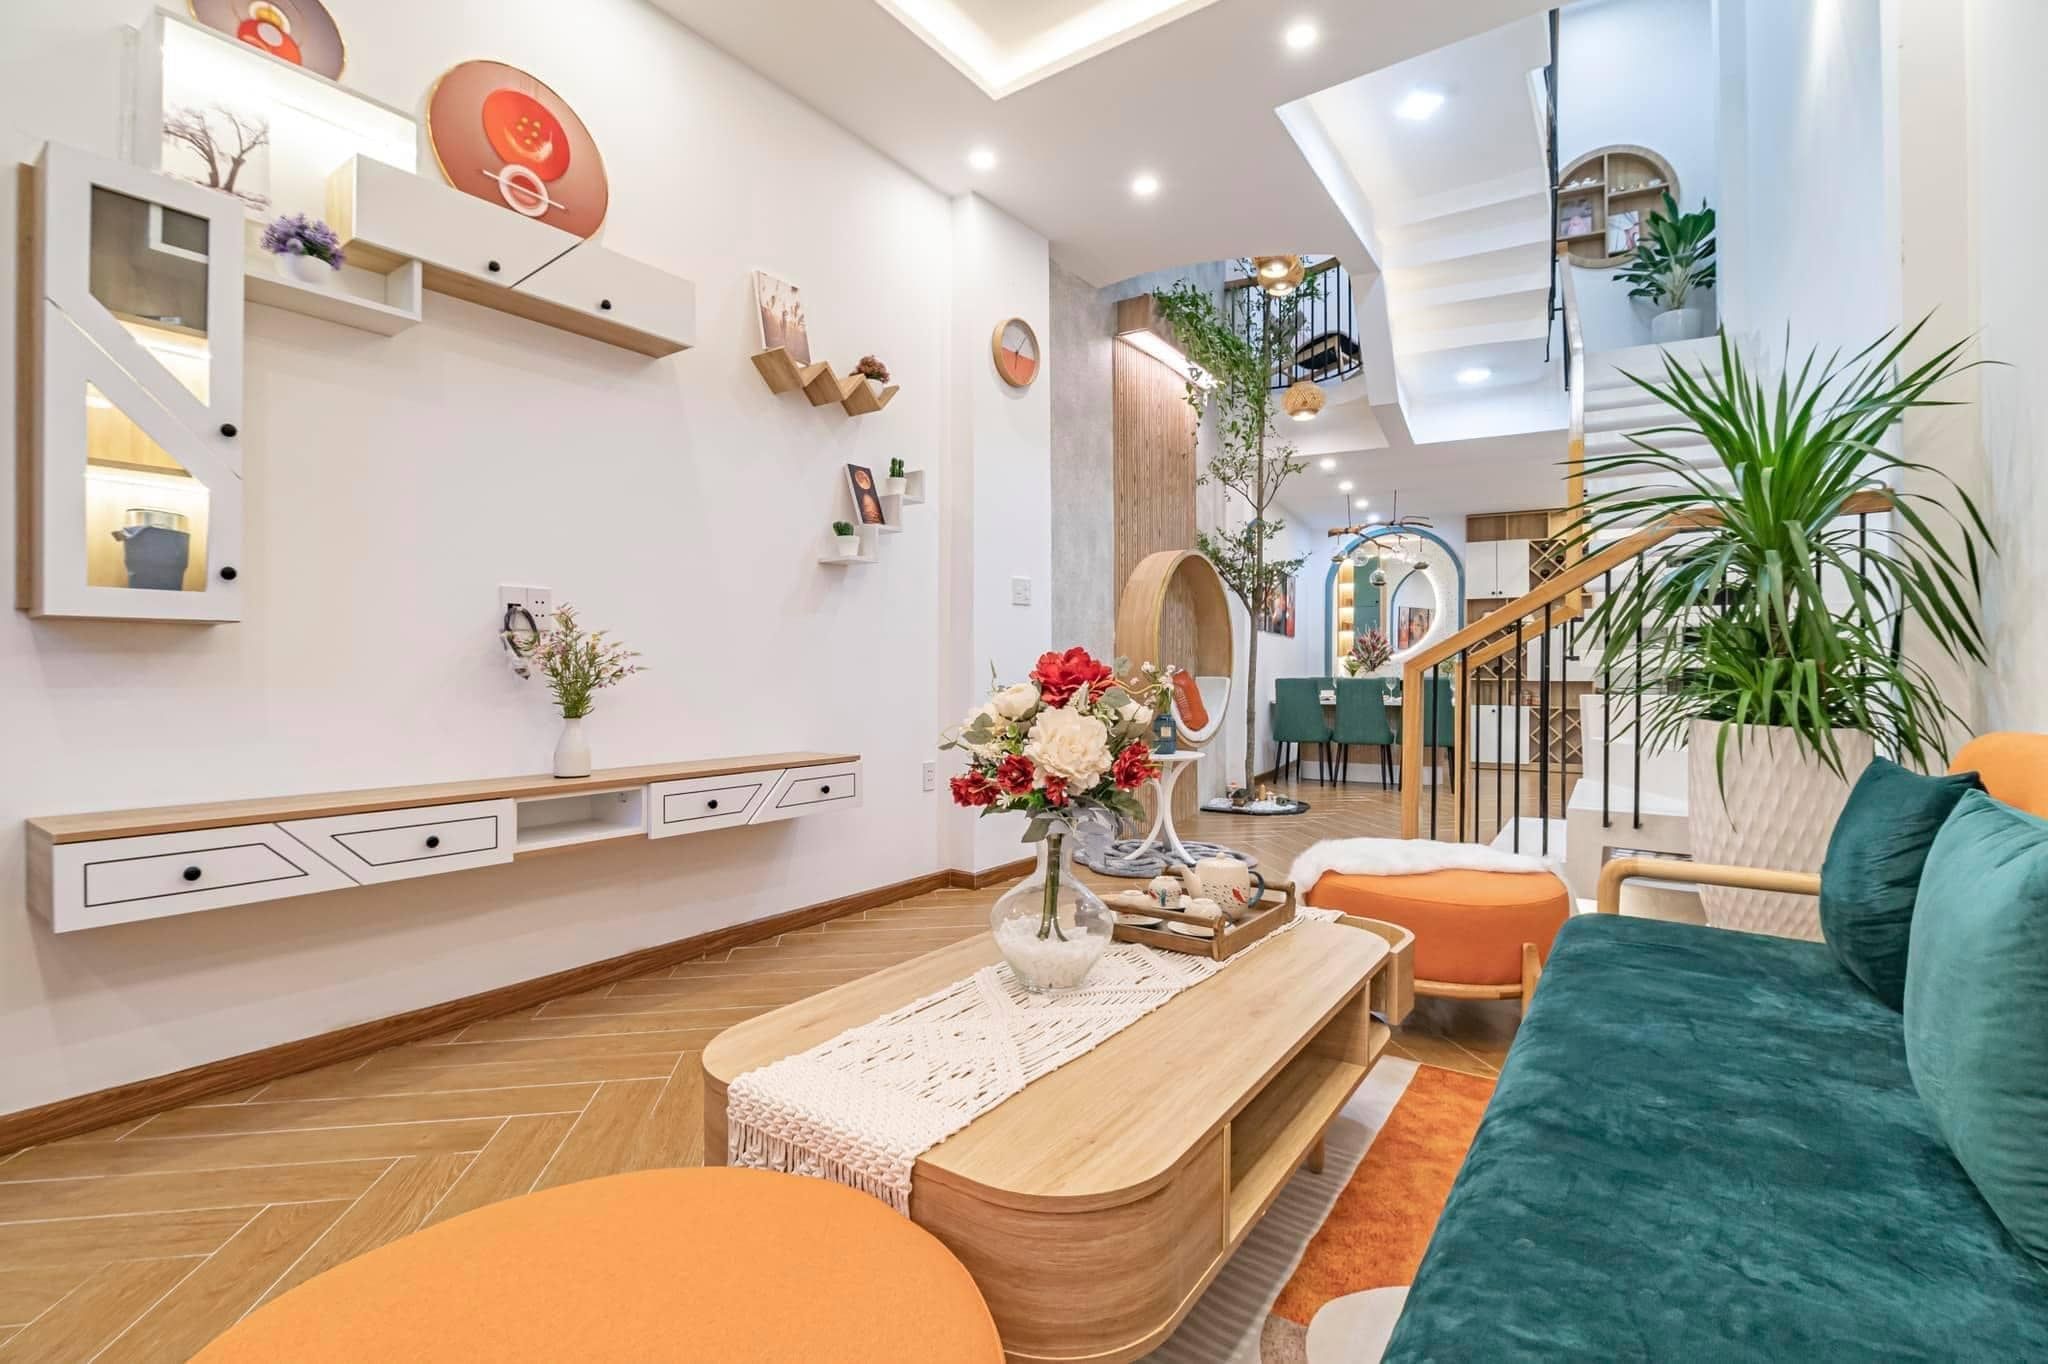 Phòng khách hiện đại sử dụng nội thất gam màu cam, xanh nổi bật làm điểm nhấn thú vị với tủ tivi lạ mắt, độc đáo